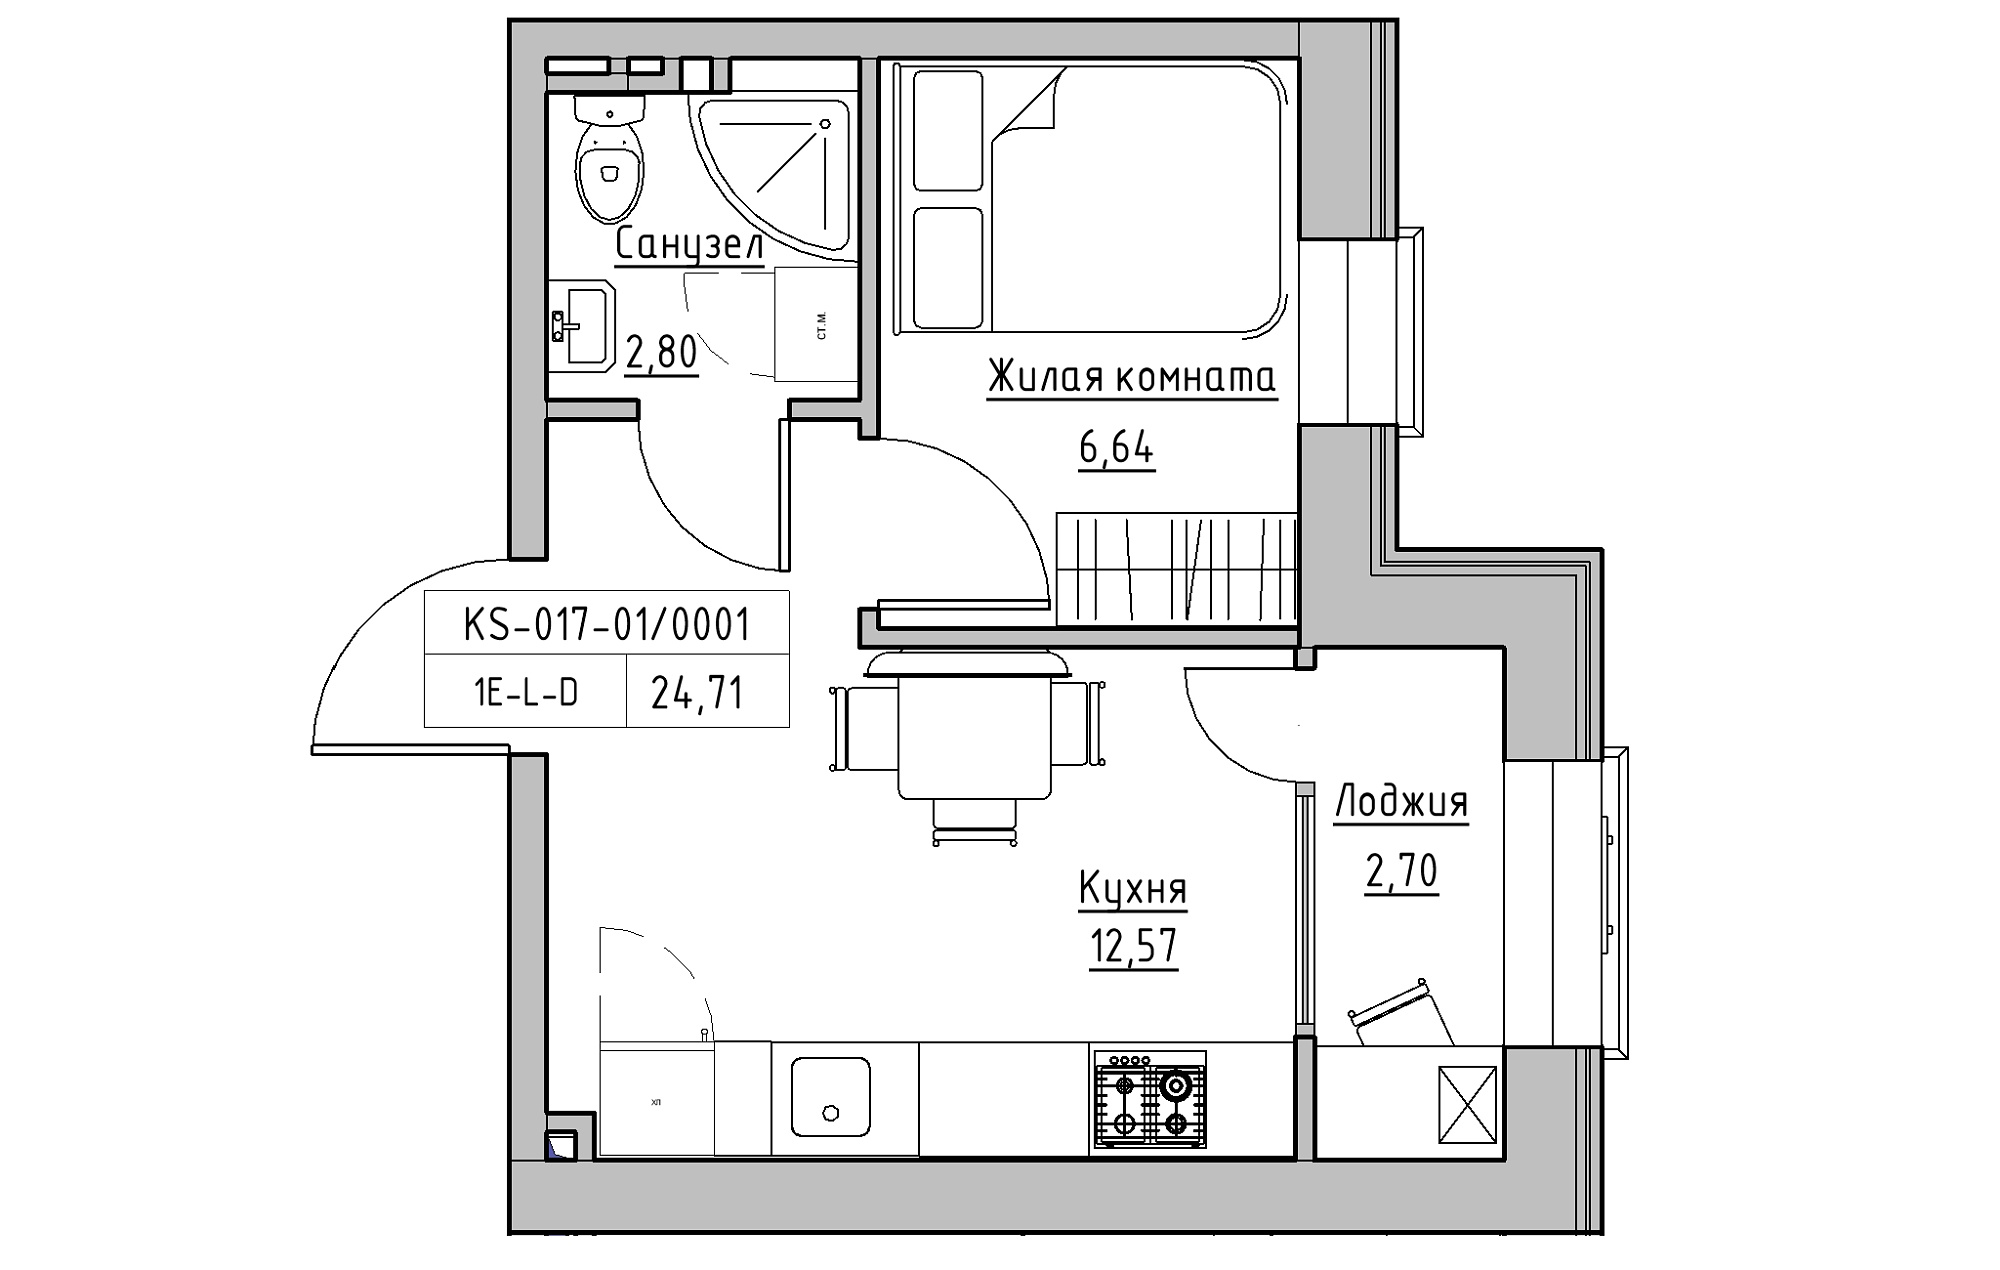 Планировка 1-к квартира площей 24.71м2, KS-017-01/0001.